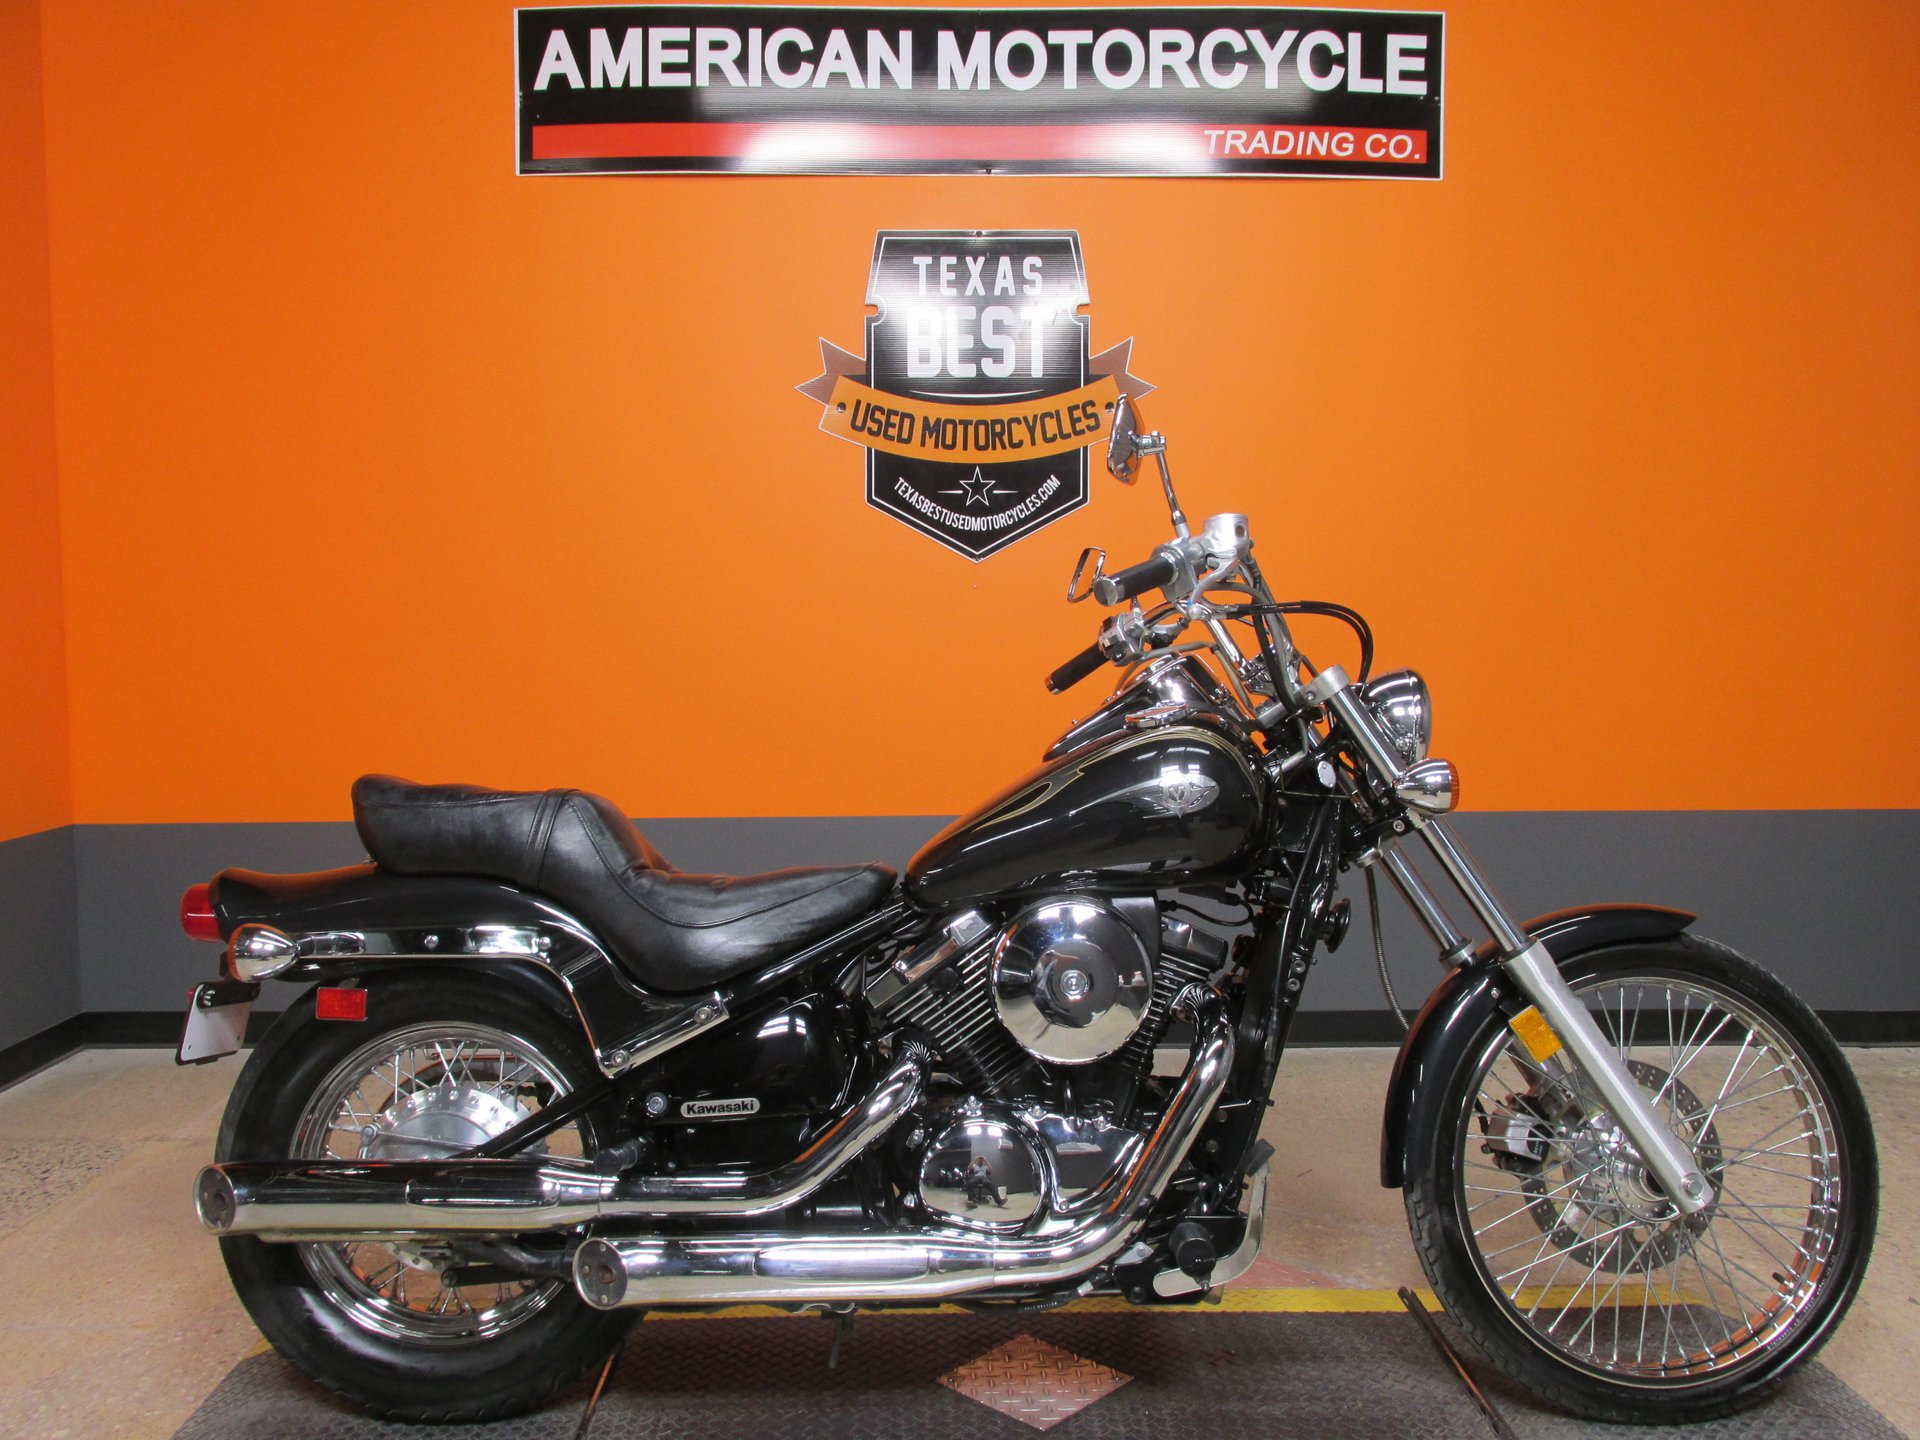 2003 Kawasaki Vulcan | American Motorcycle Trading Company - Used Harley  Davidson Motorcycles